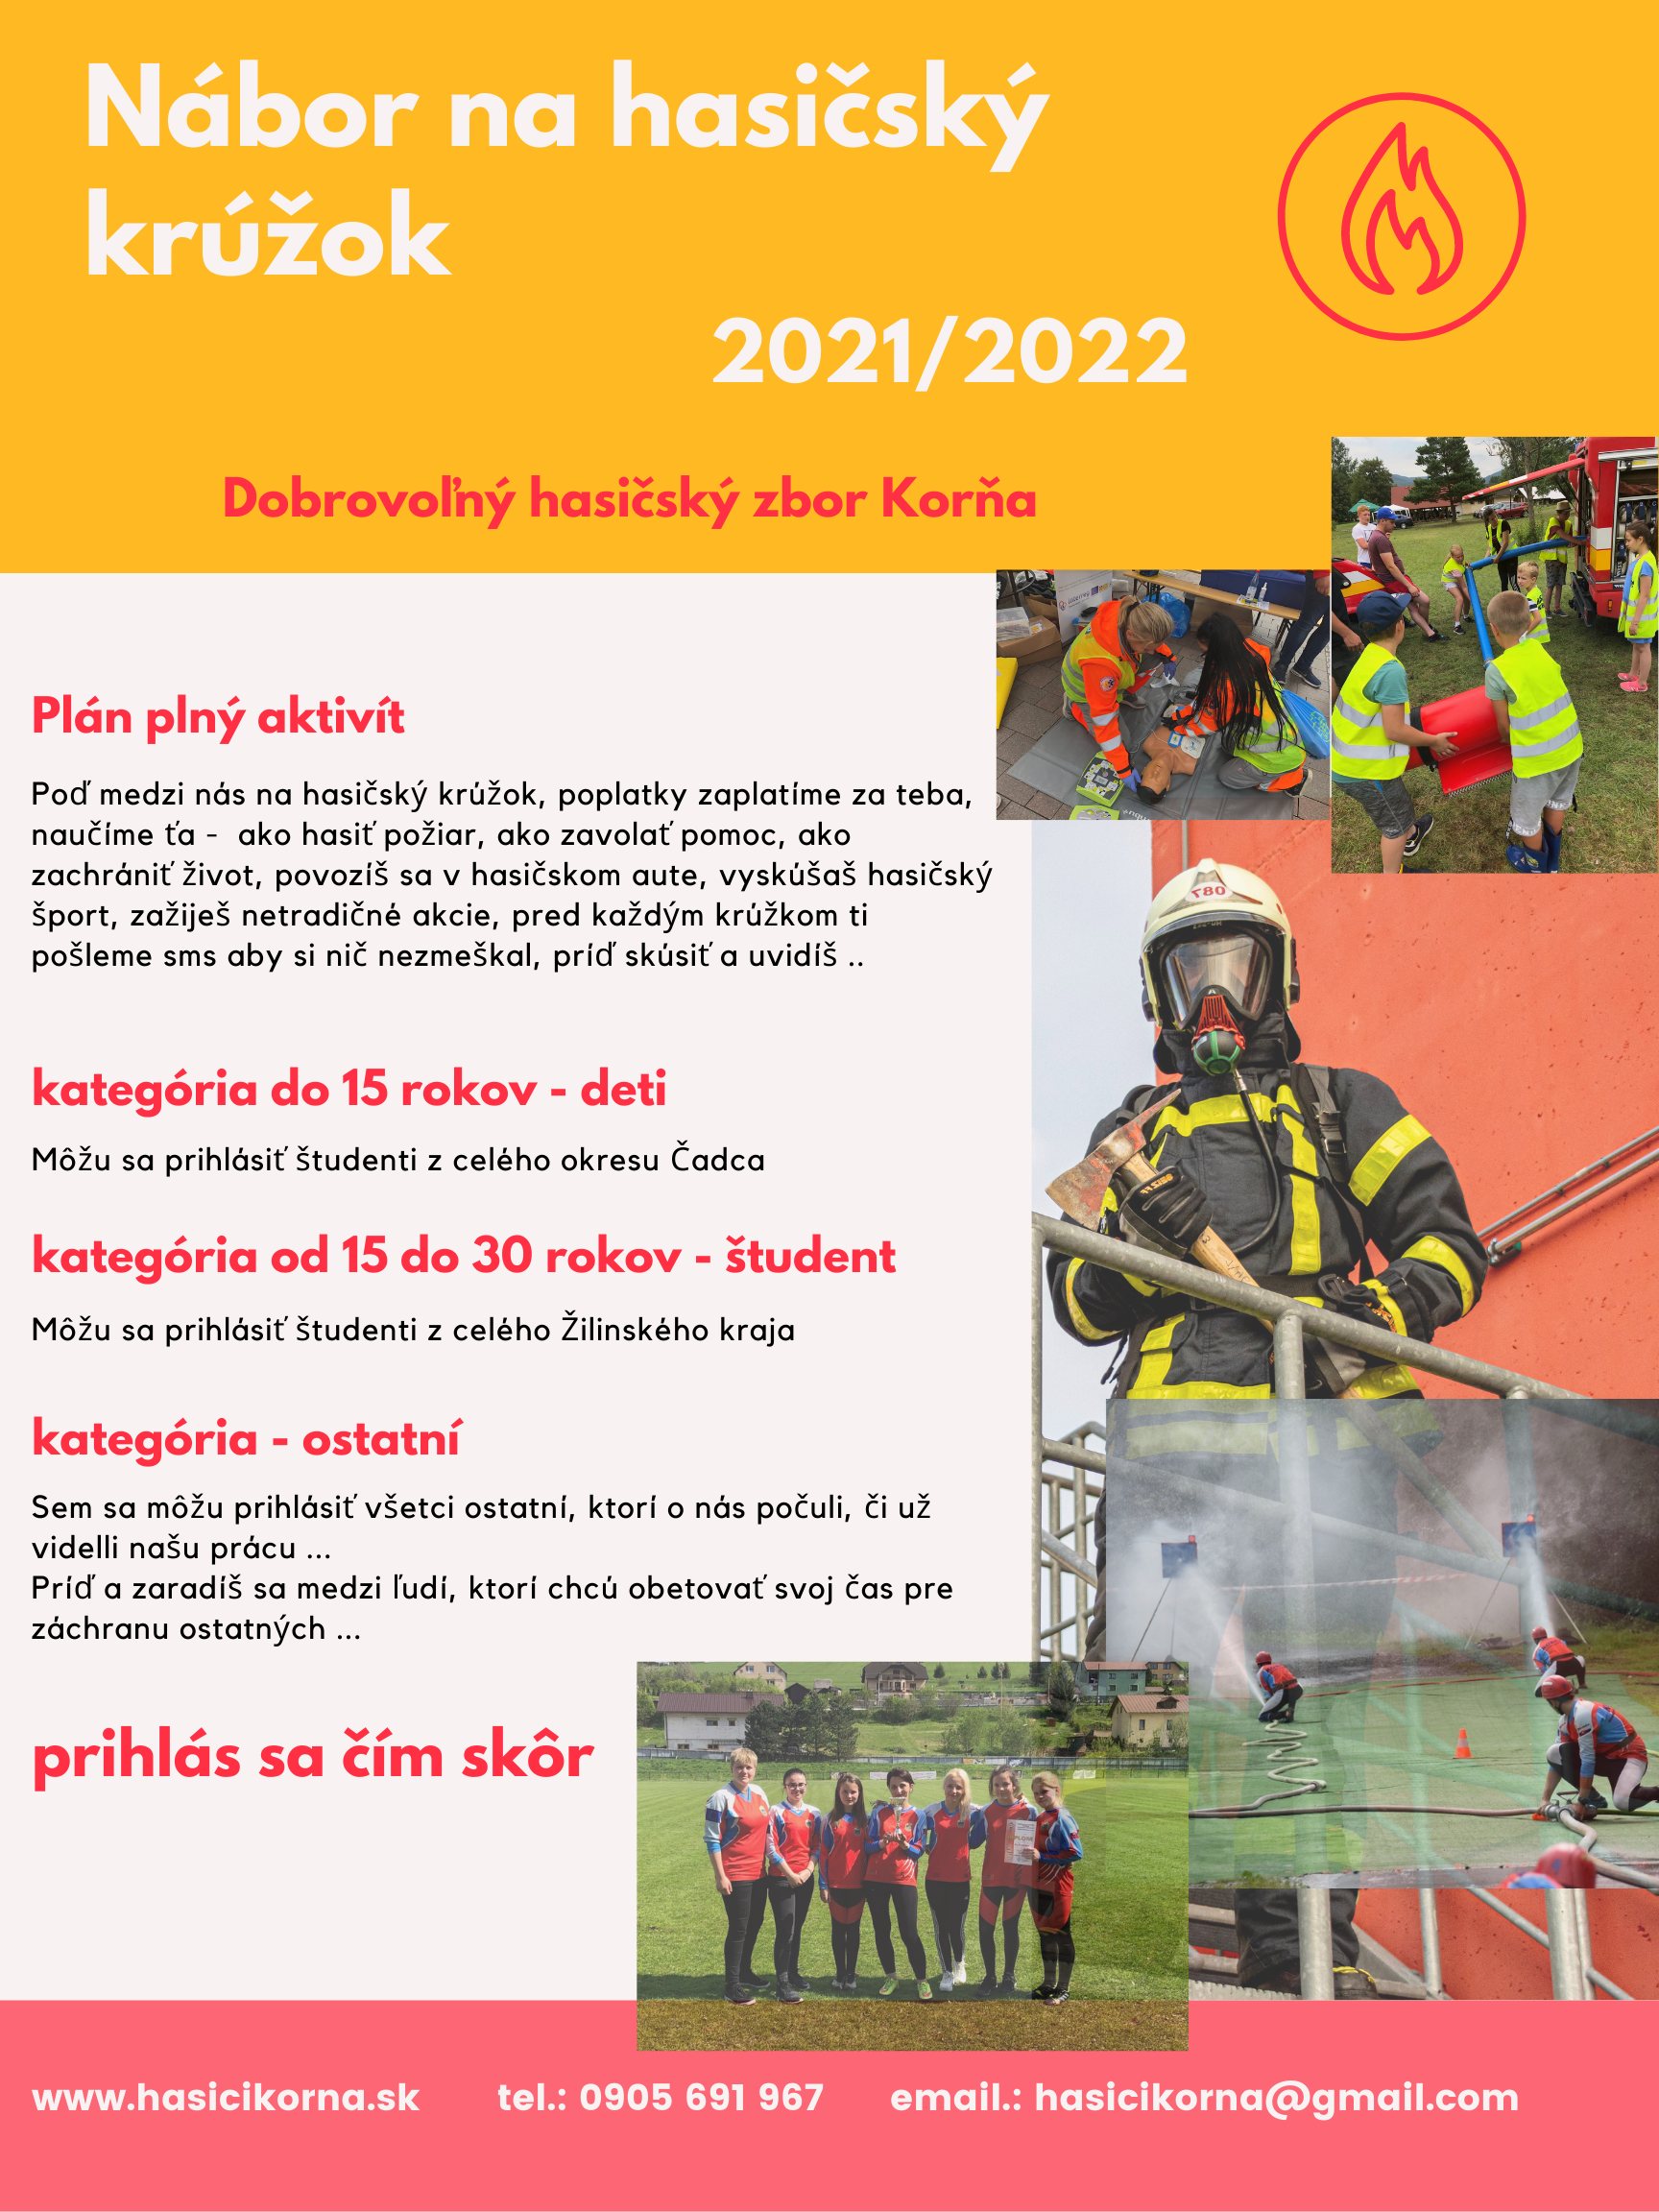 Prihlás sa na hasičský krúžok 2021/2022